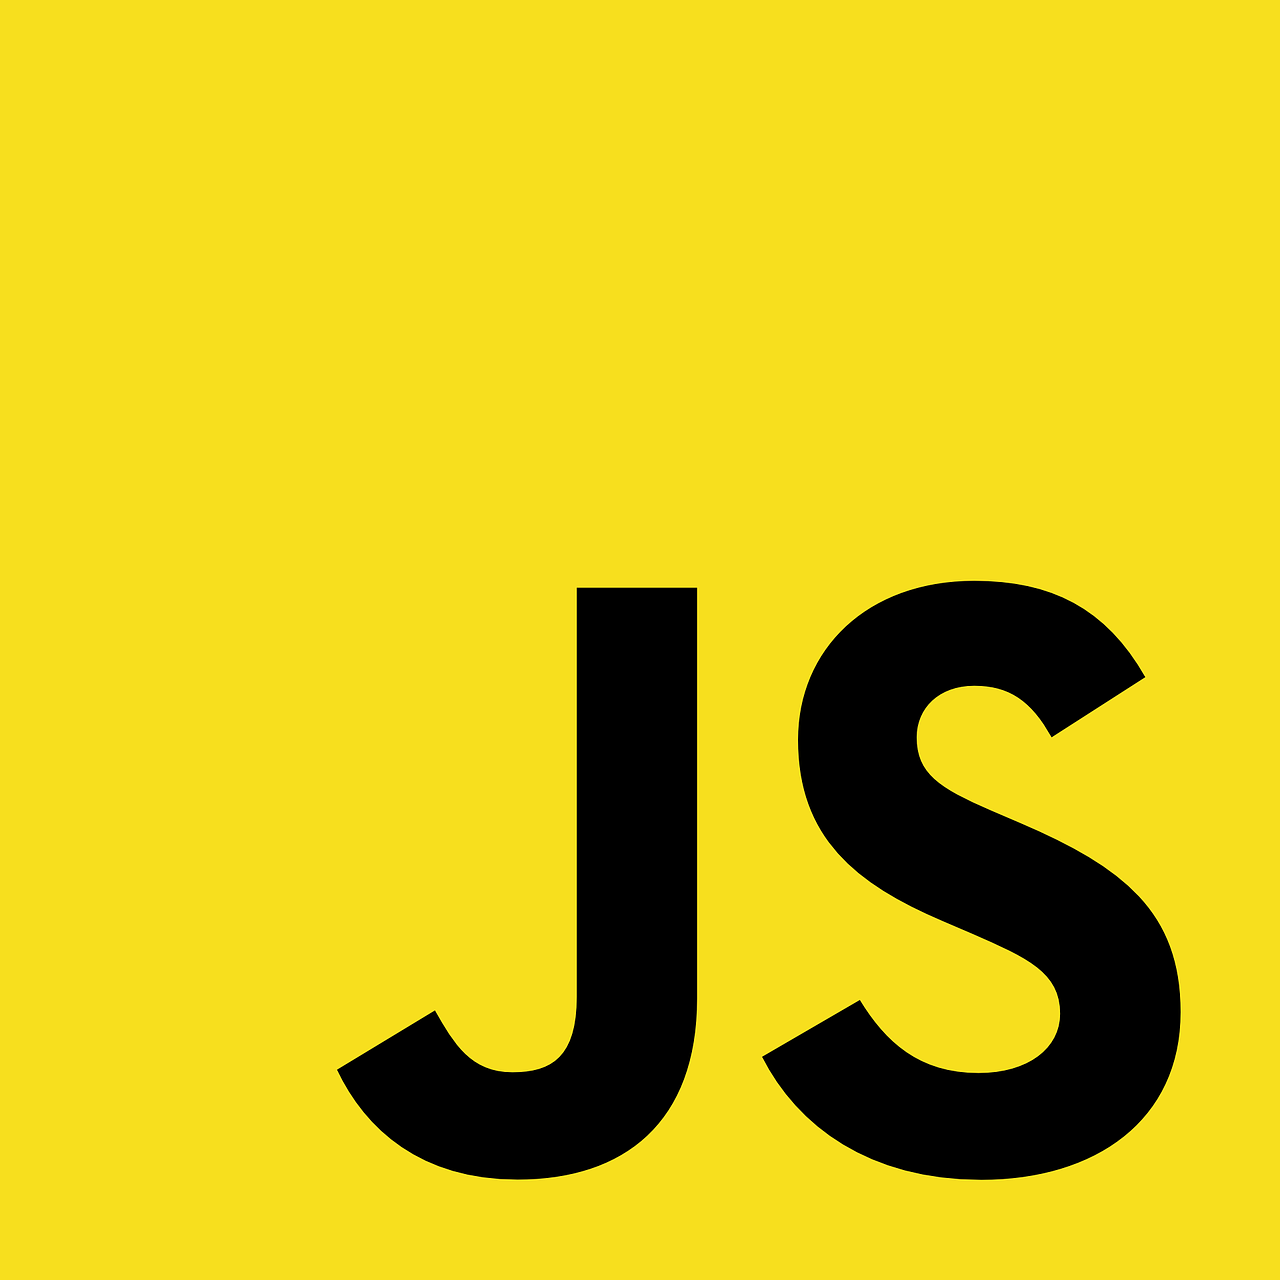 An HTML5 logo